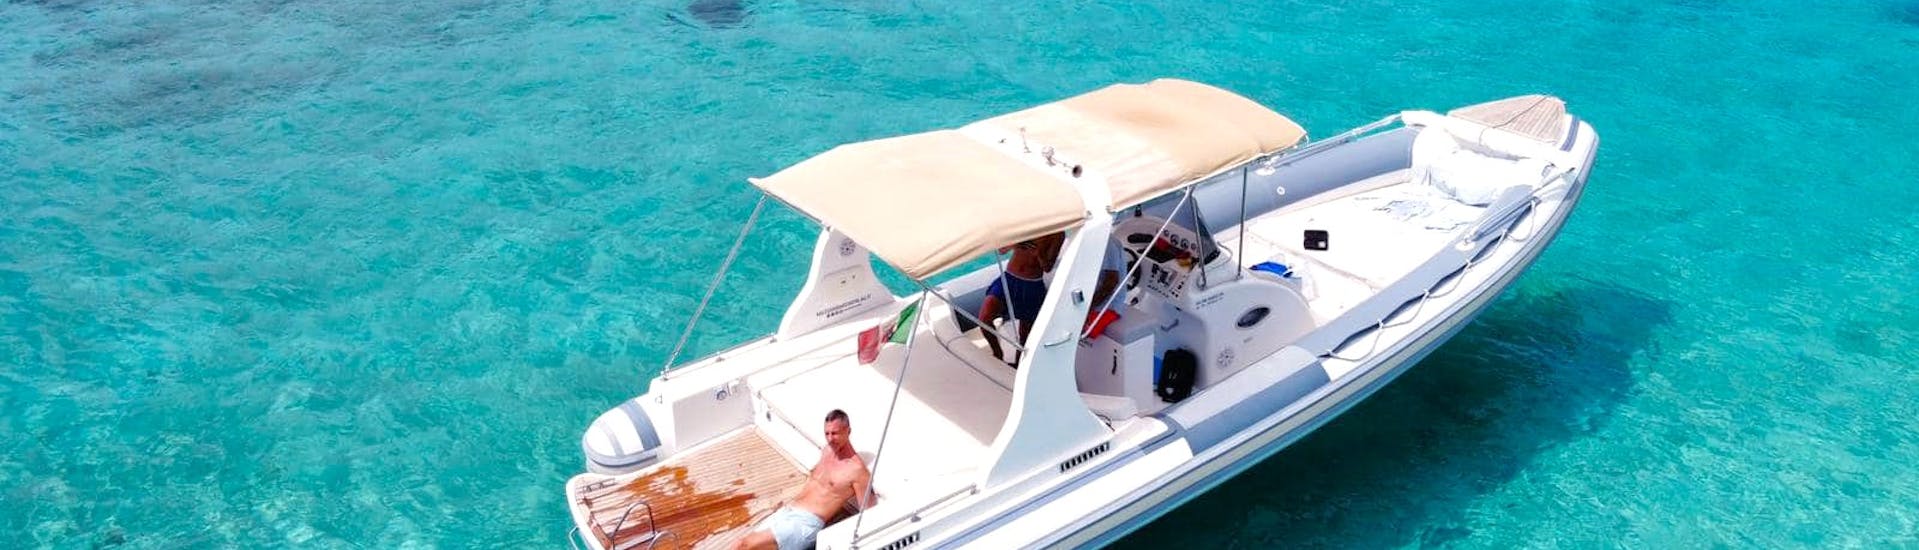 Photo du bateau semi-rigide de Maxi Rib Boat Excursionspendant l'excursion privée autour de l'archipel de la Maddalena avec un passager bronzant sur le pont.